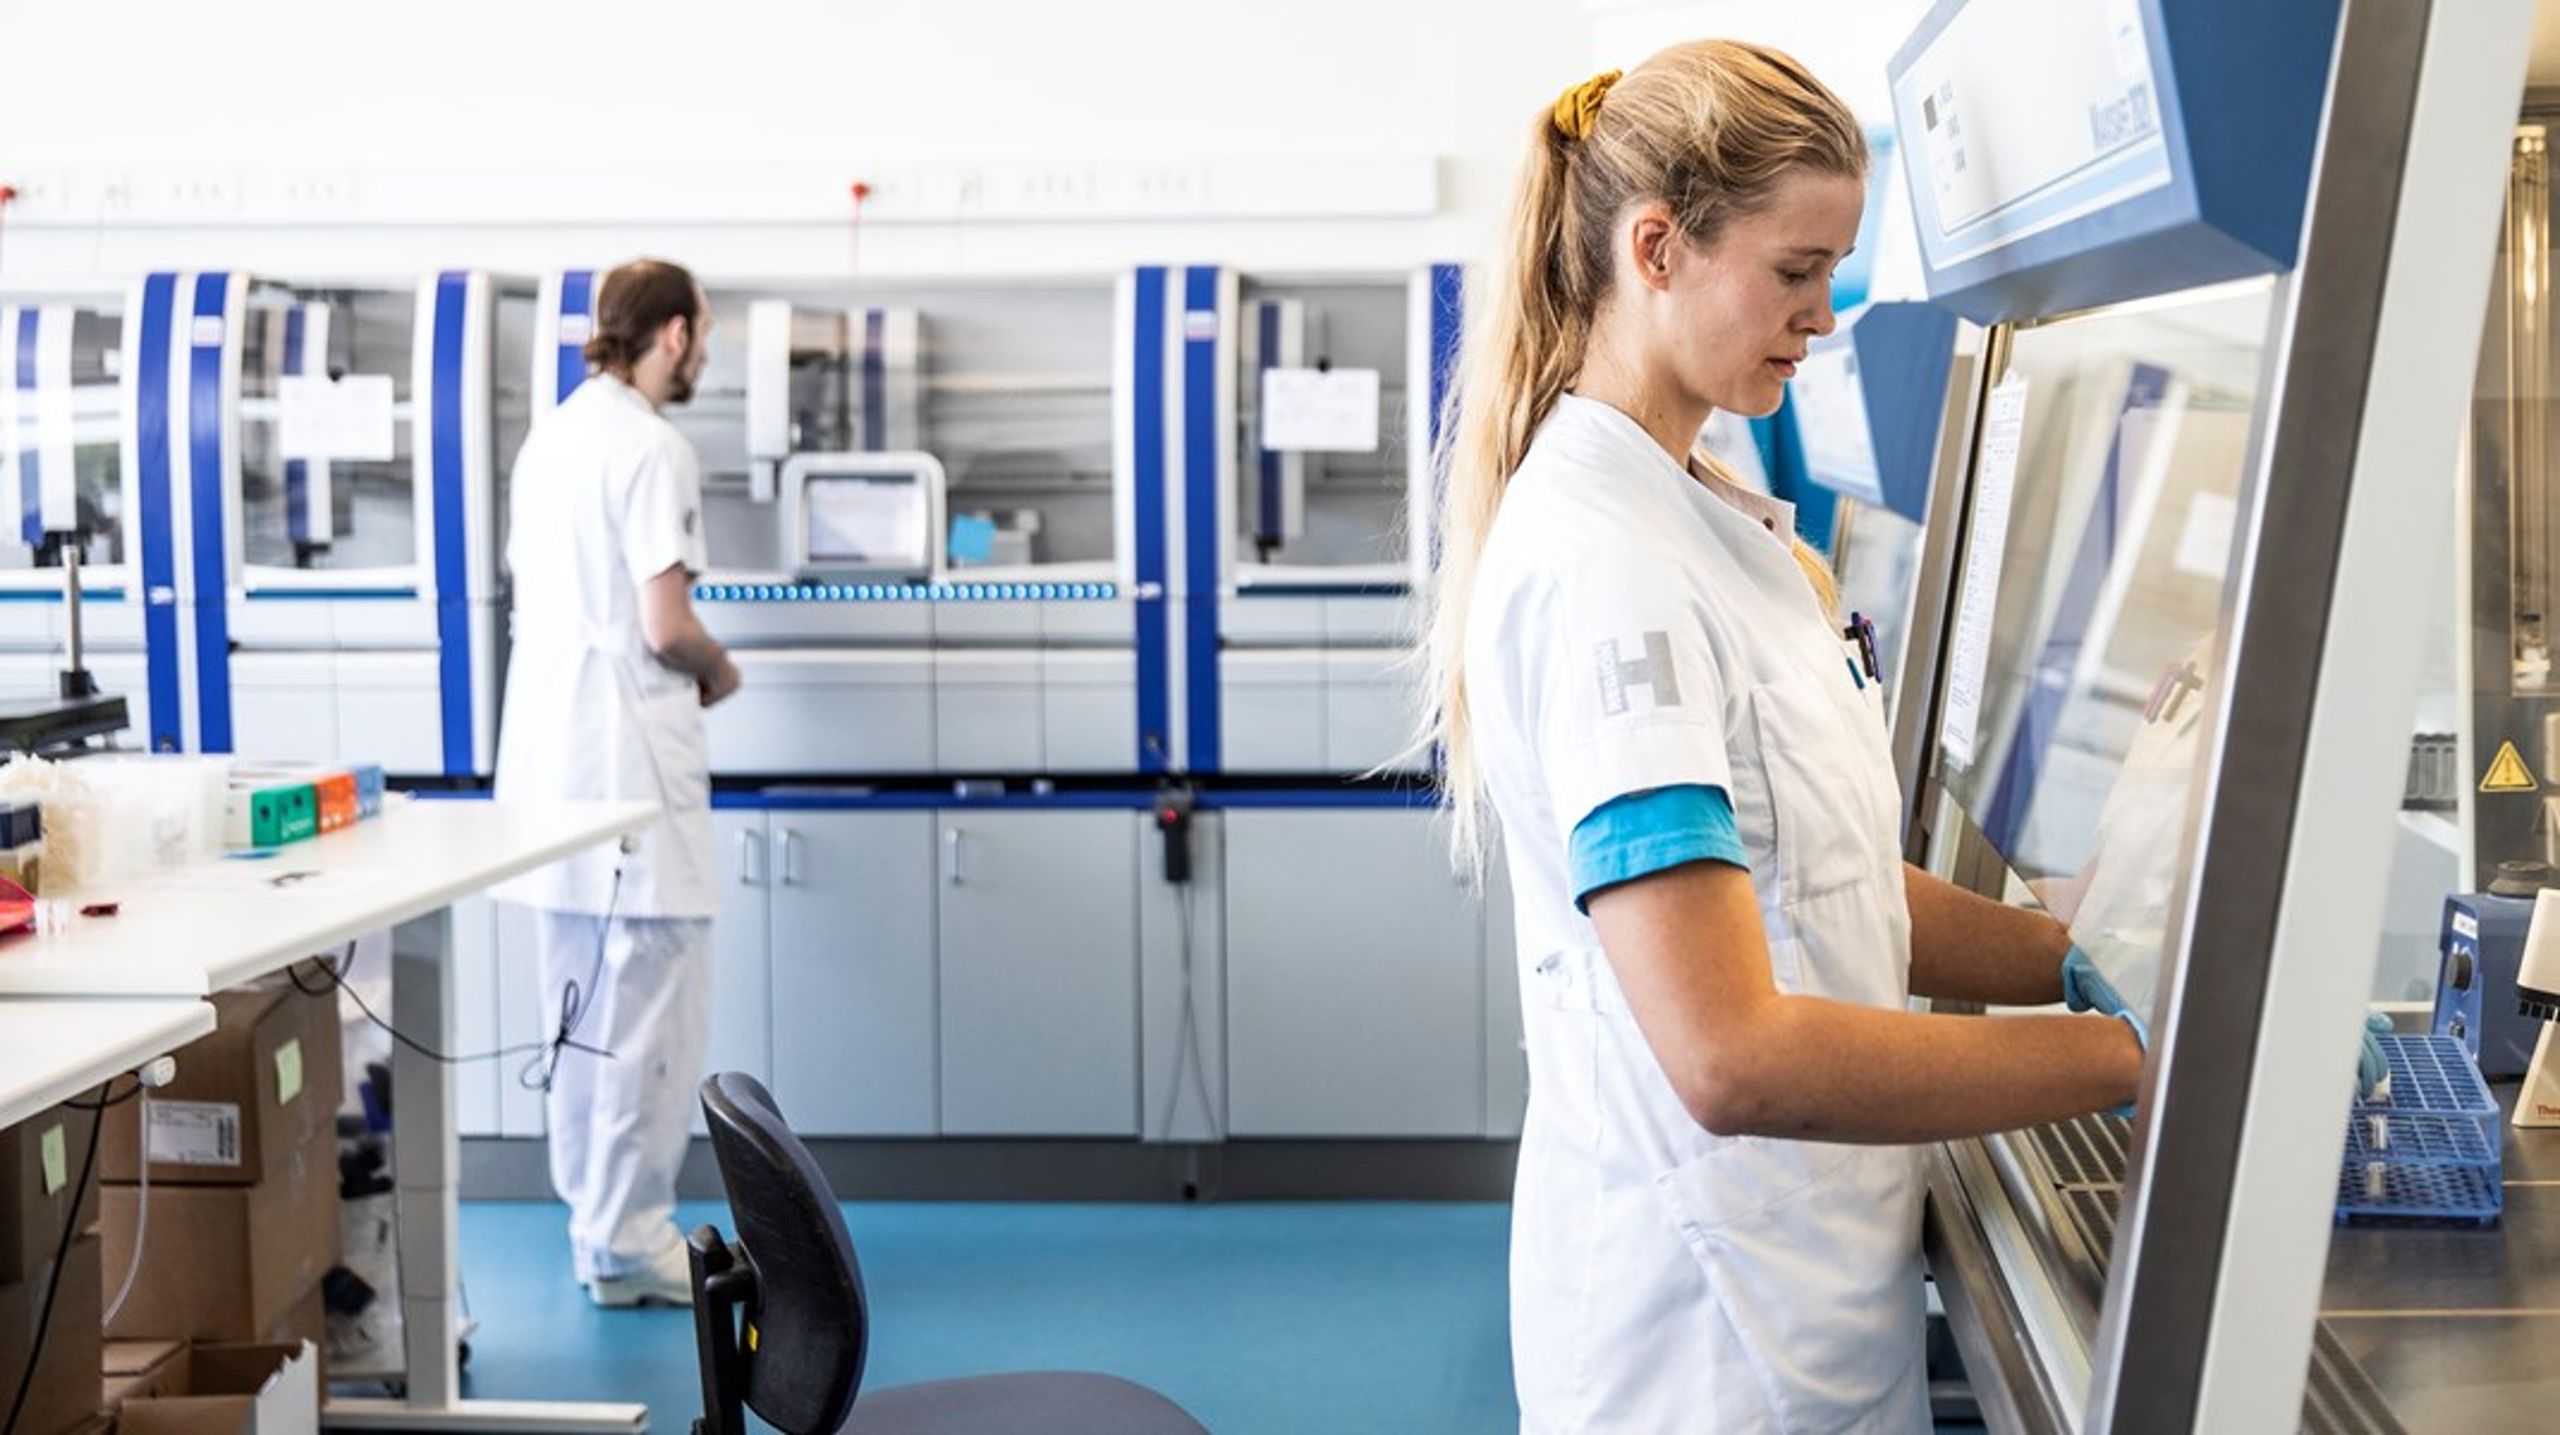 Der er et meget stort potentiale for at frigøre medarbejdere i sundhedssektoren, hvis vi bliver bedre til at implementere flere sundhedsteknologier, skriver Natasha Friis Saxberg og Freddy Lykke.